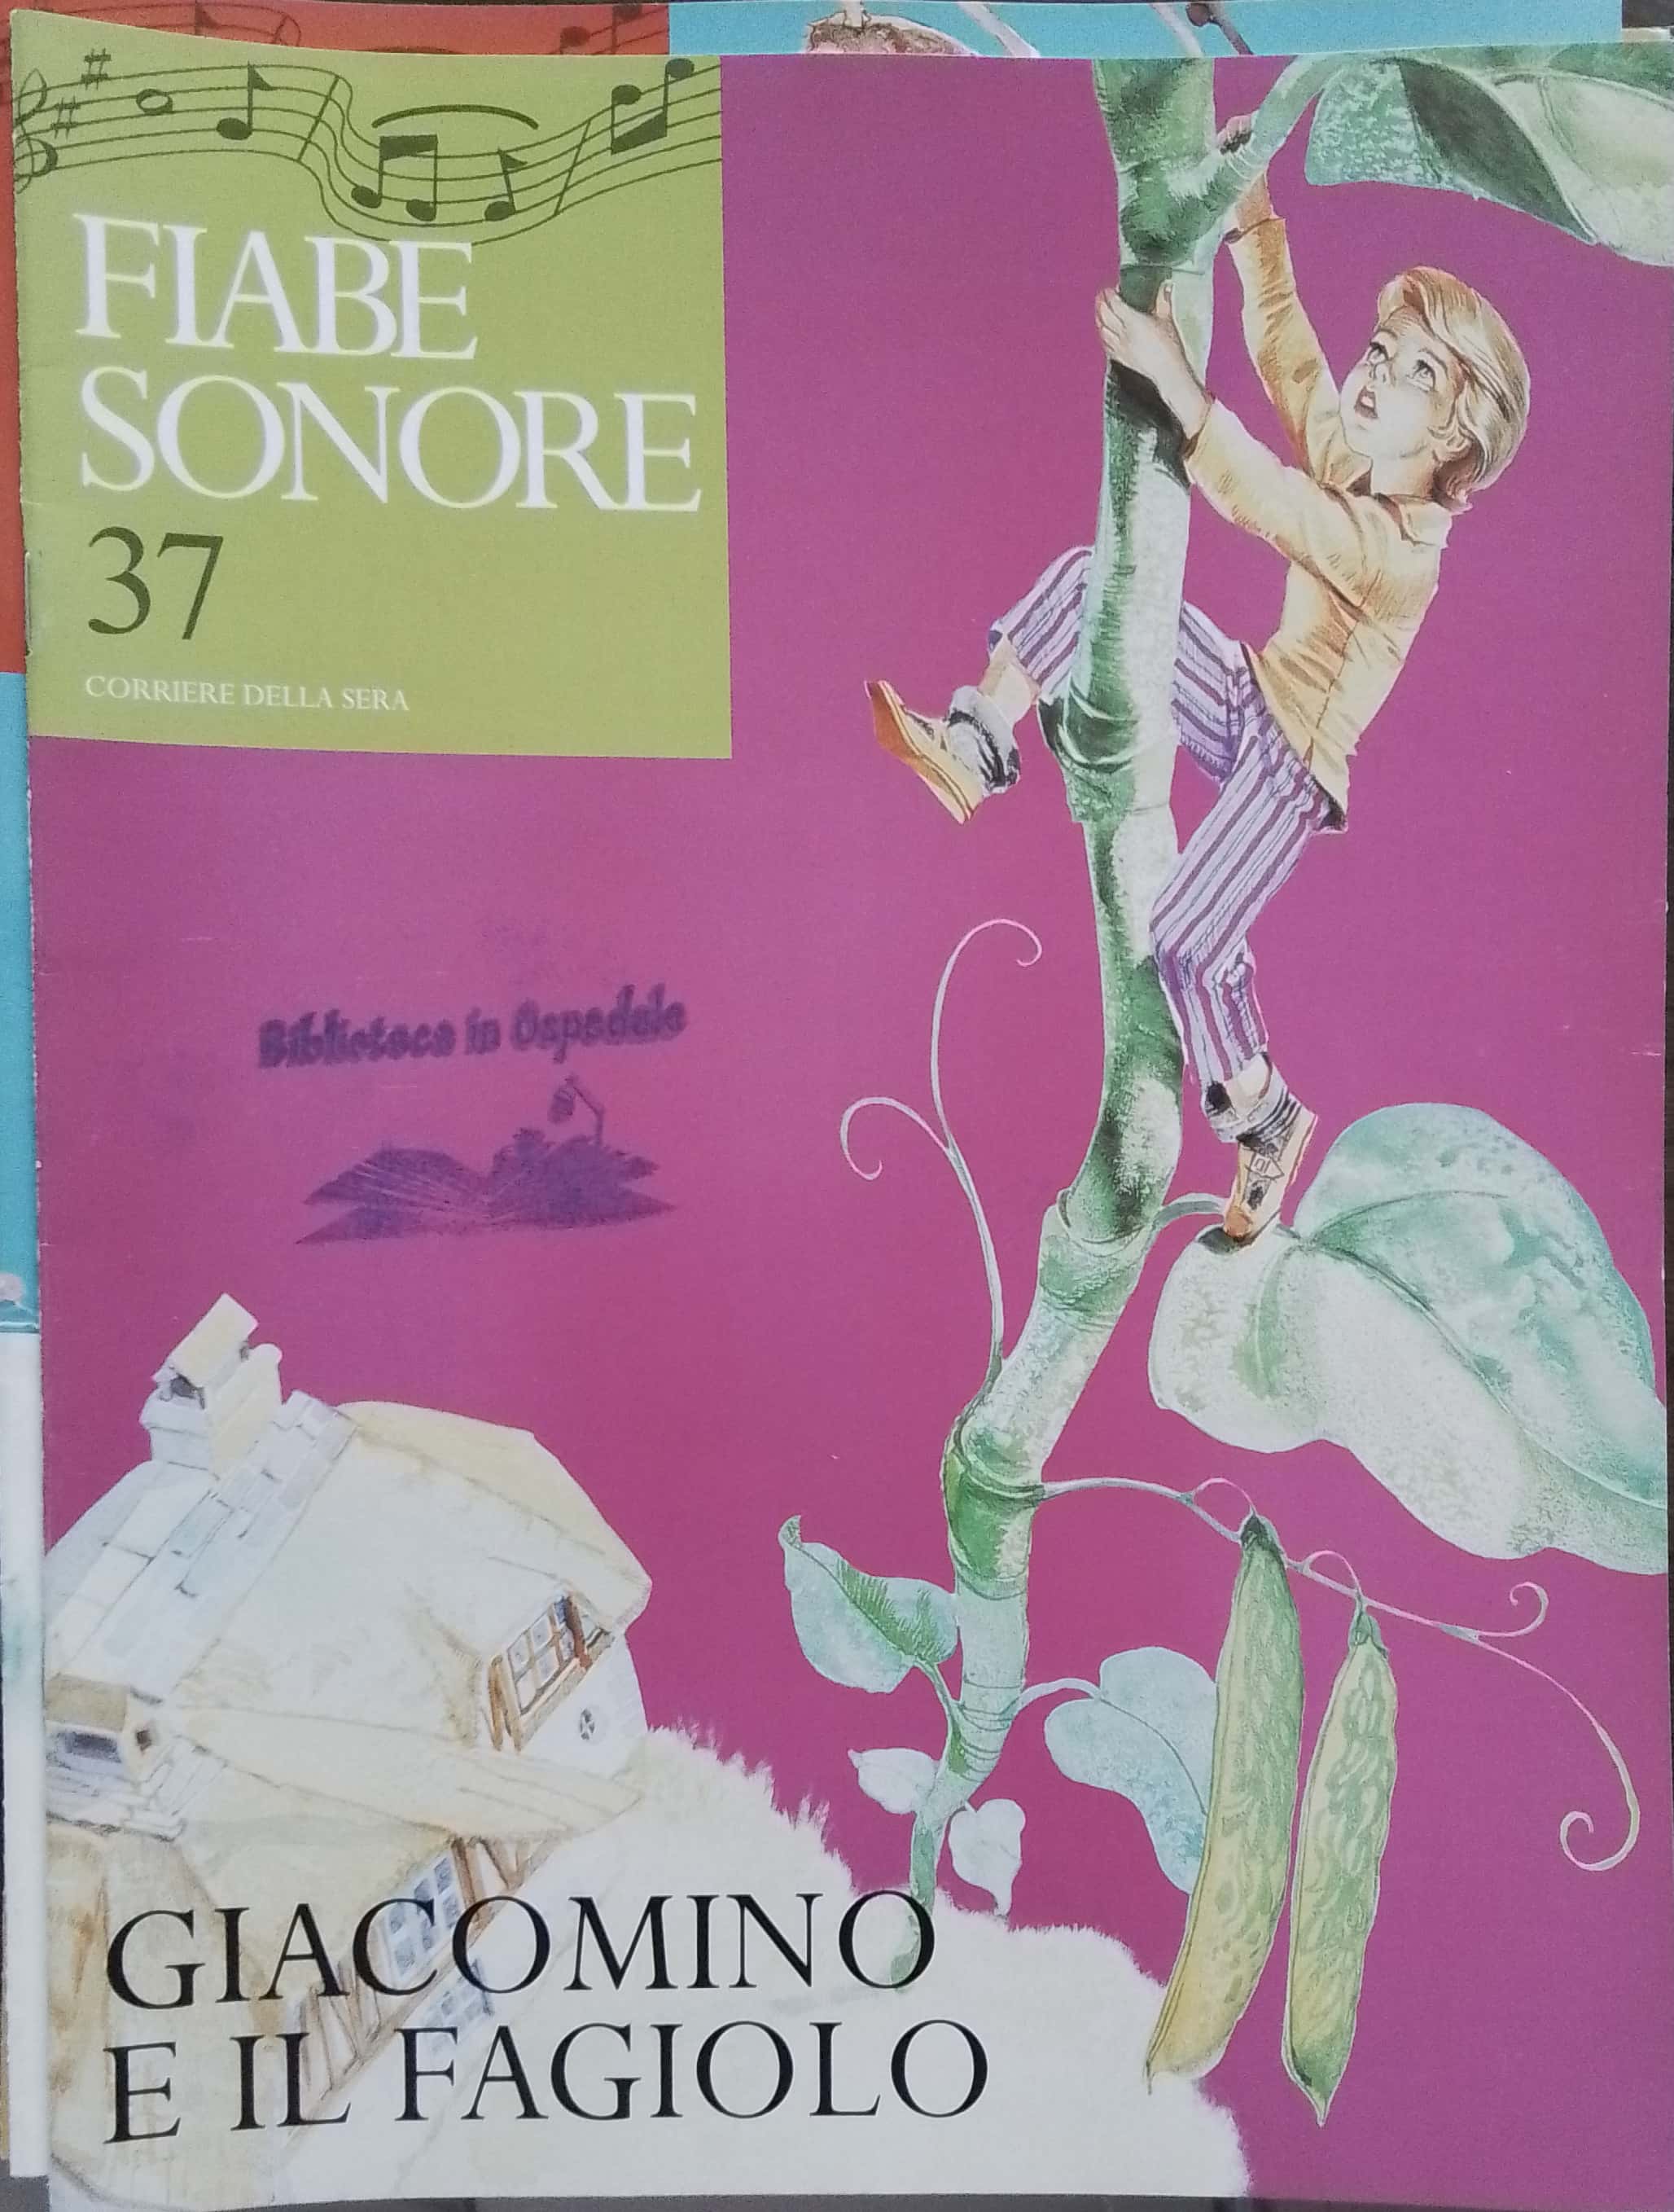 Copertina di Giacomino e il fagiolo - Fiabe sonore